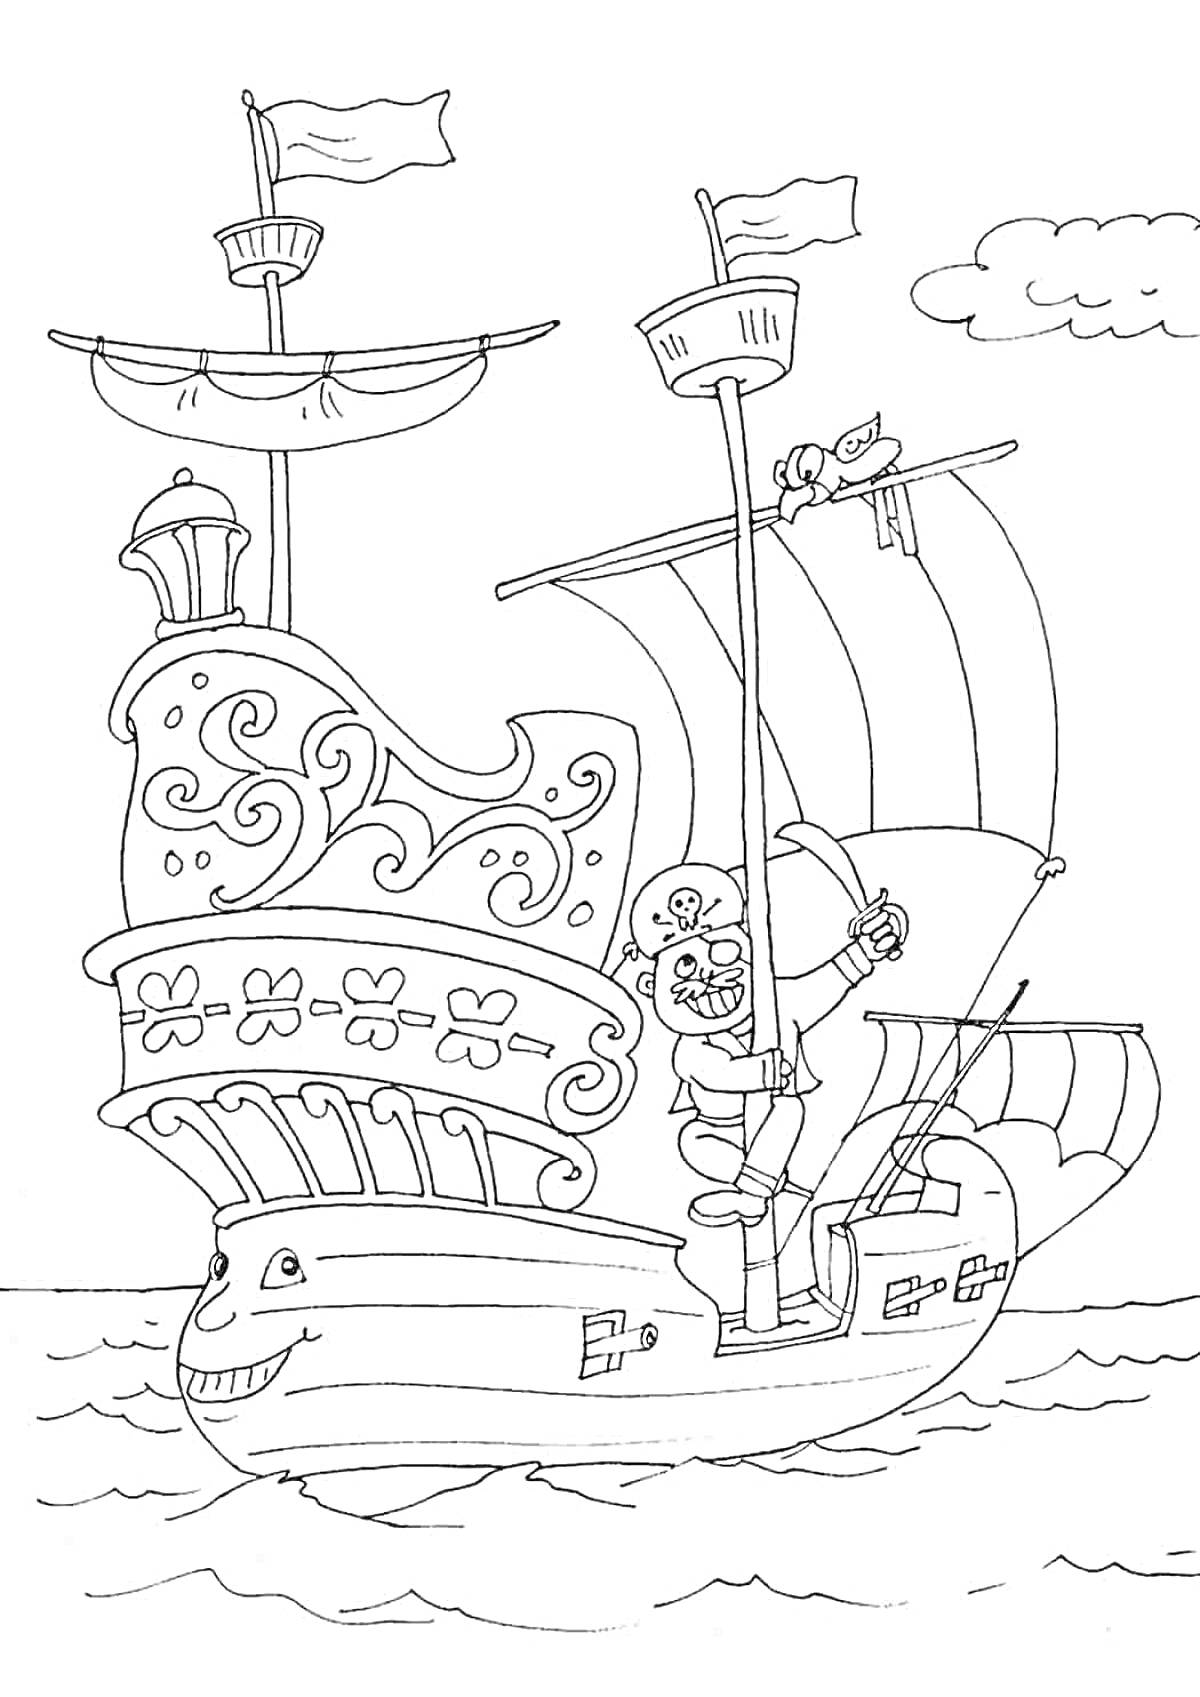 Раскраска Пиратский корабль с пиратом, корабельной пушкой, флагами и кошкой на мачте